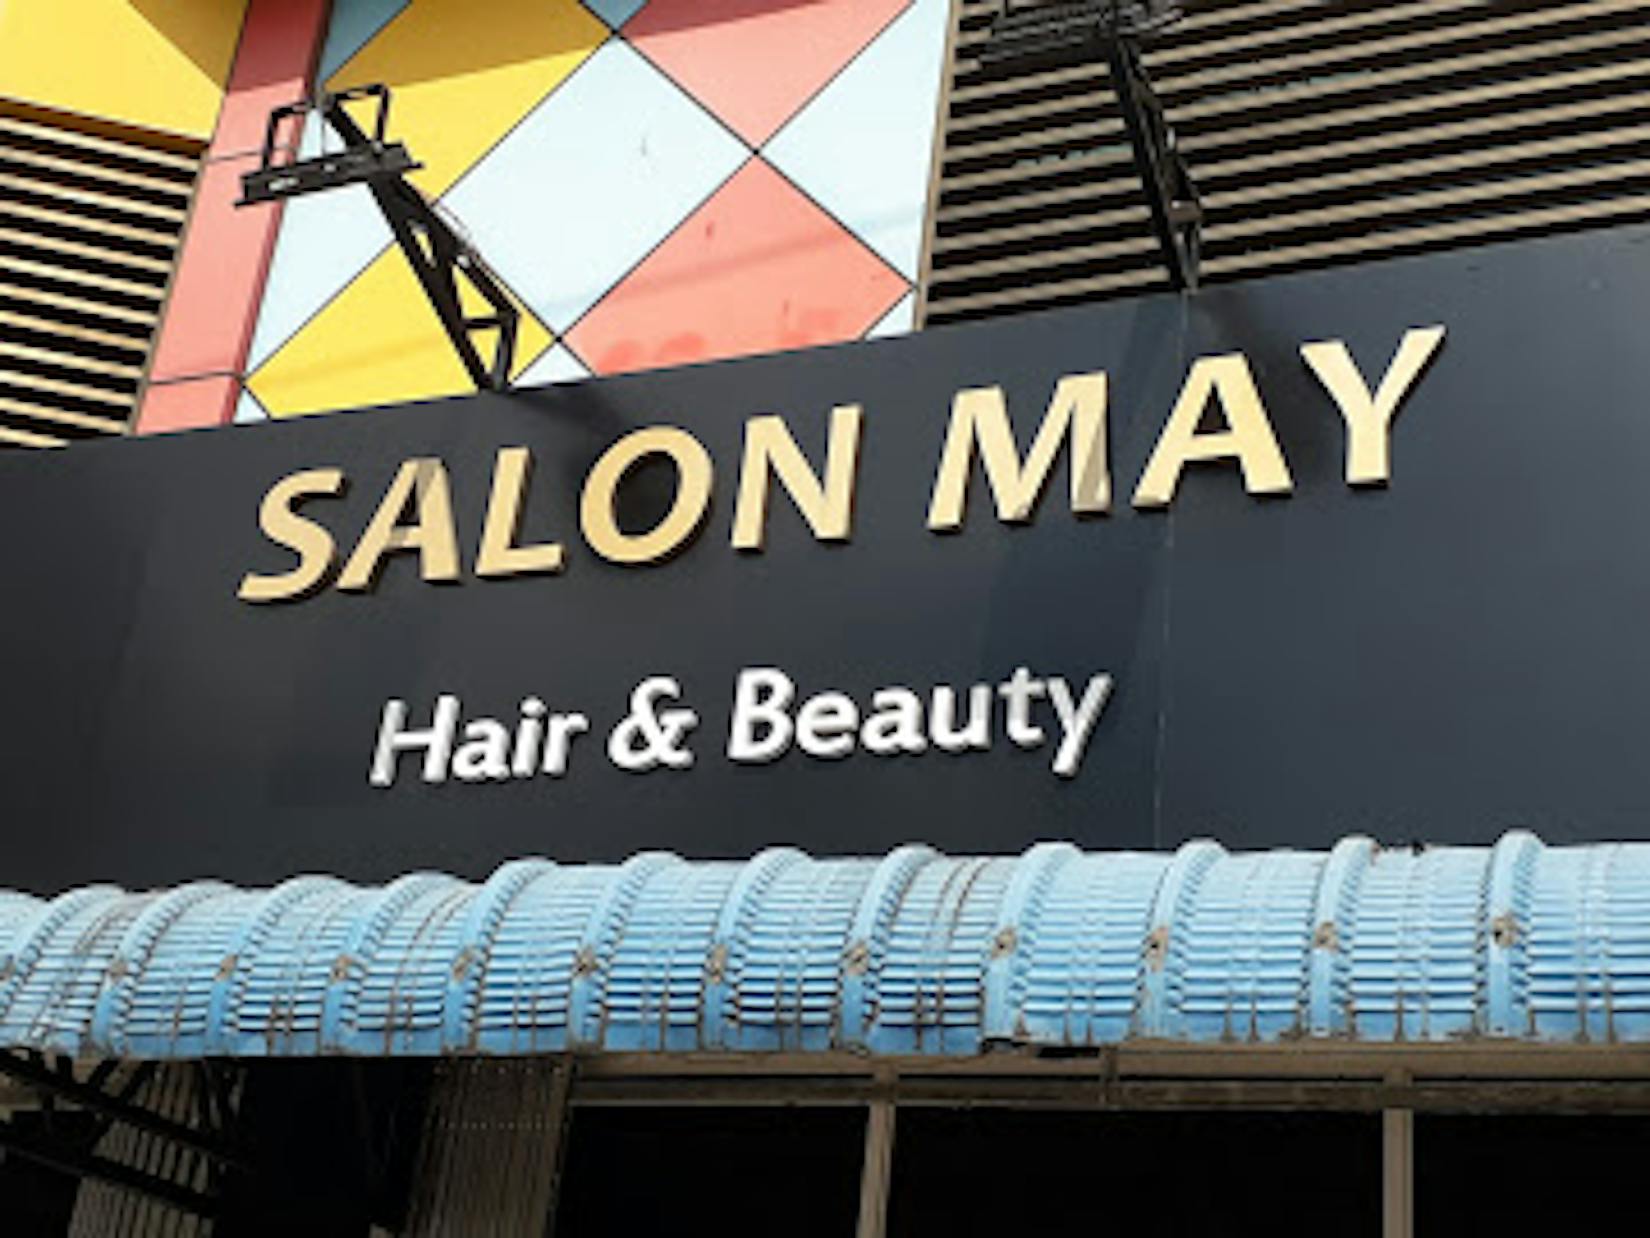 Salon May Hair & Beauty | Beauty